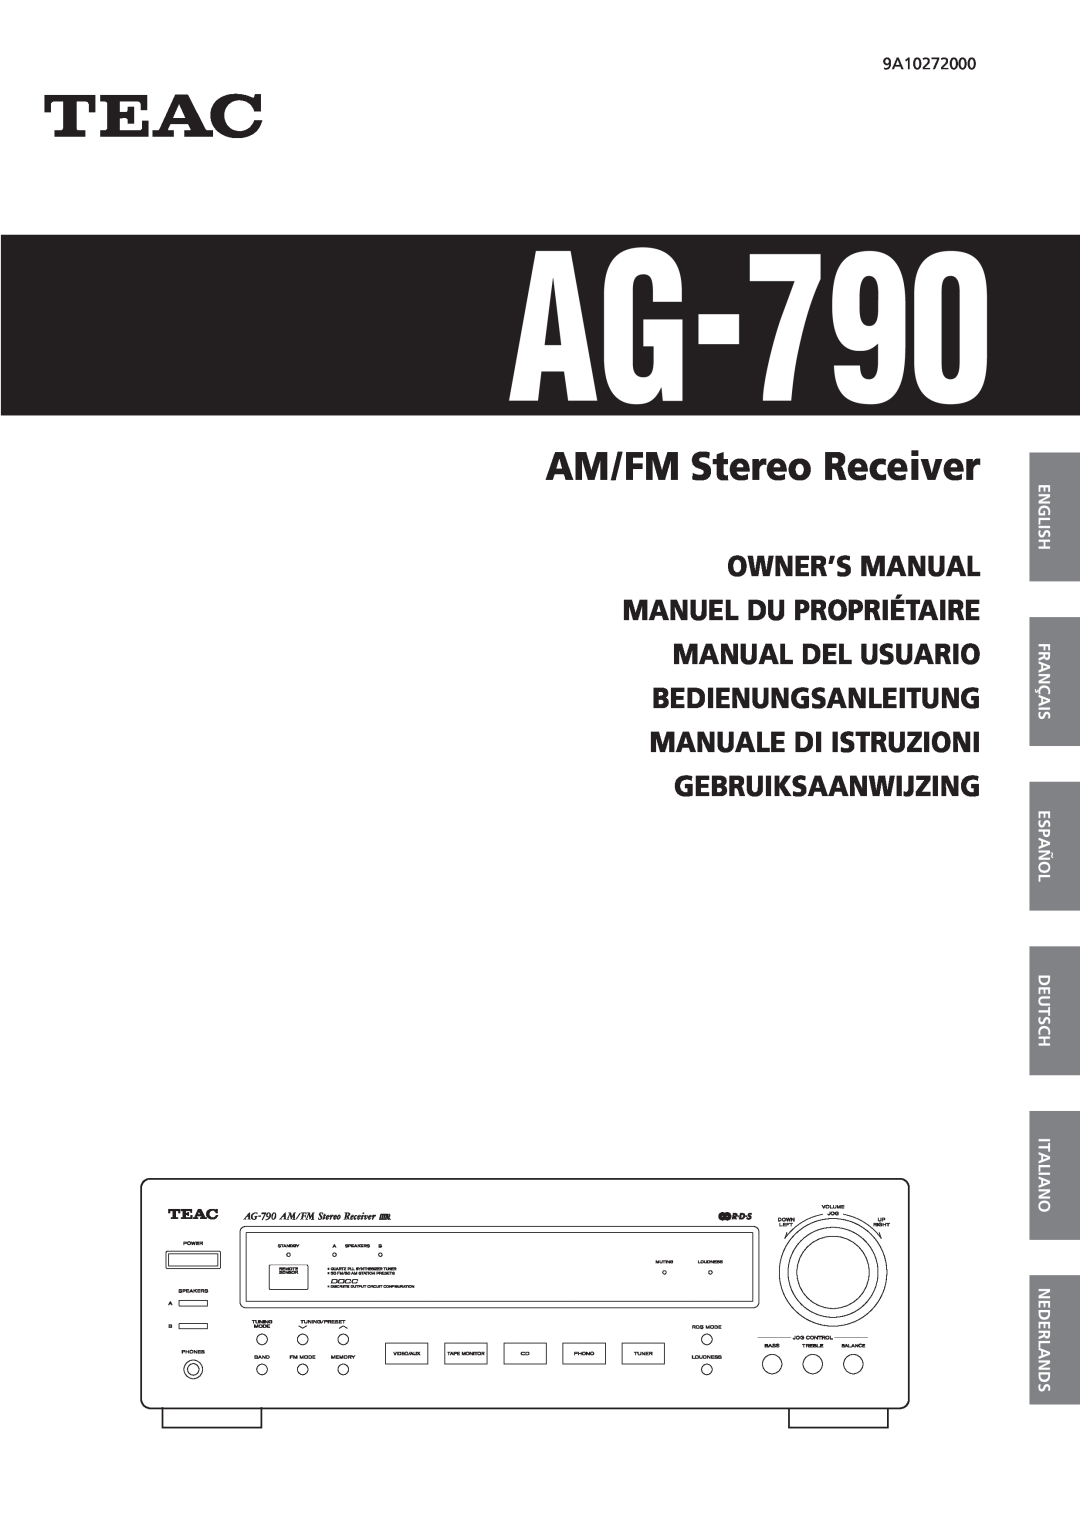 Teac AG-790 owner manual English Français Español Deutsch Italiano, Nederlands, AM/FM Stereo Receiver 